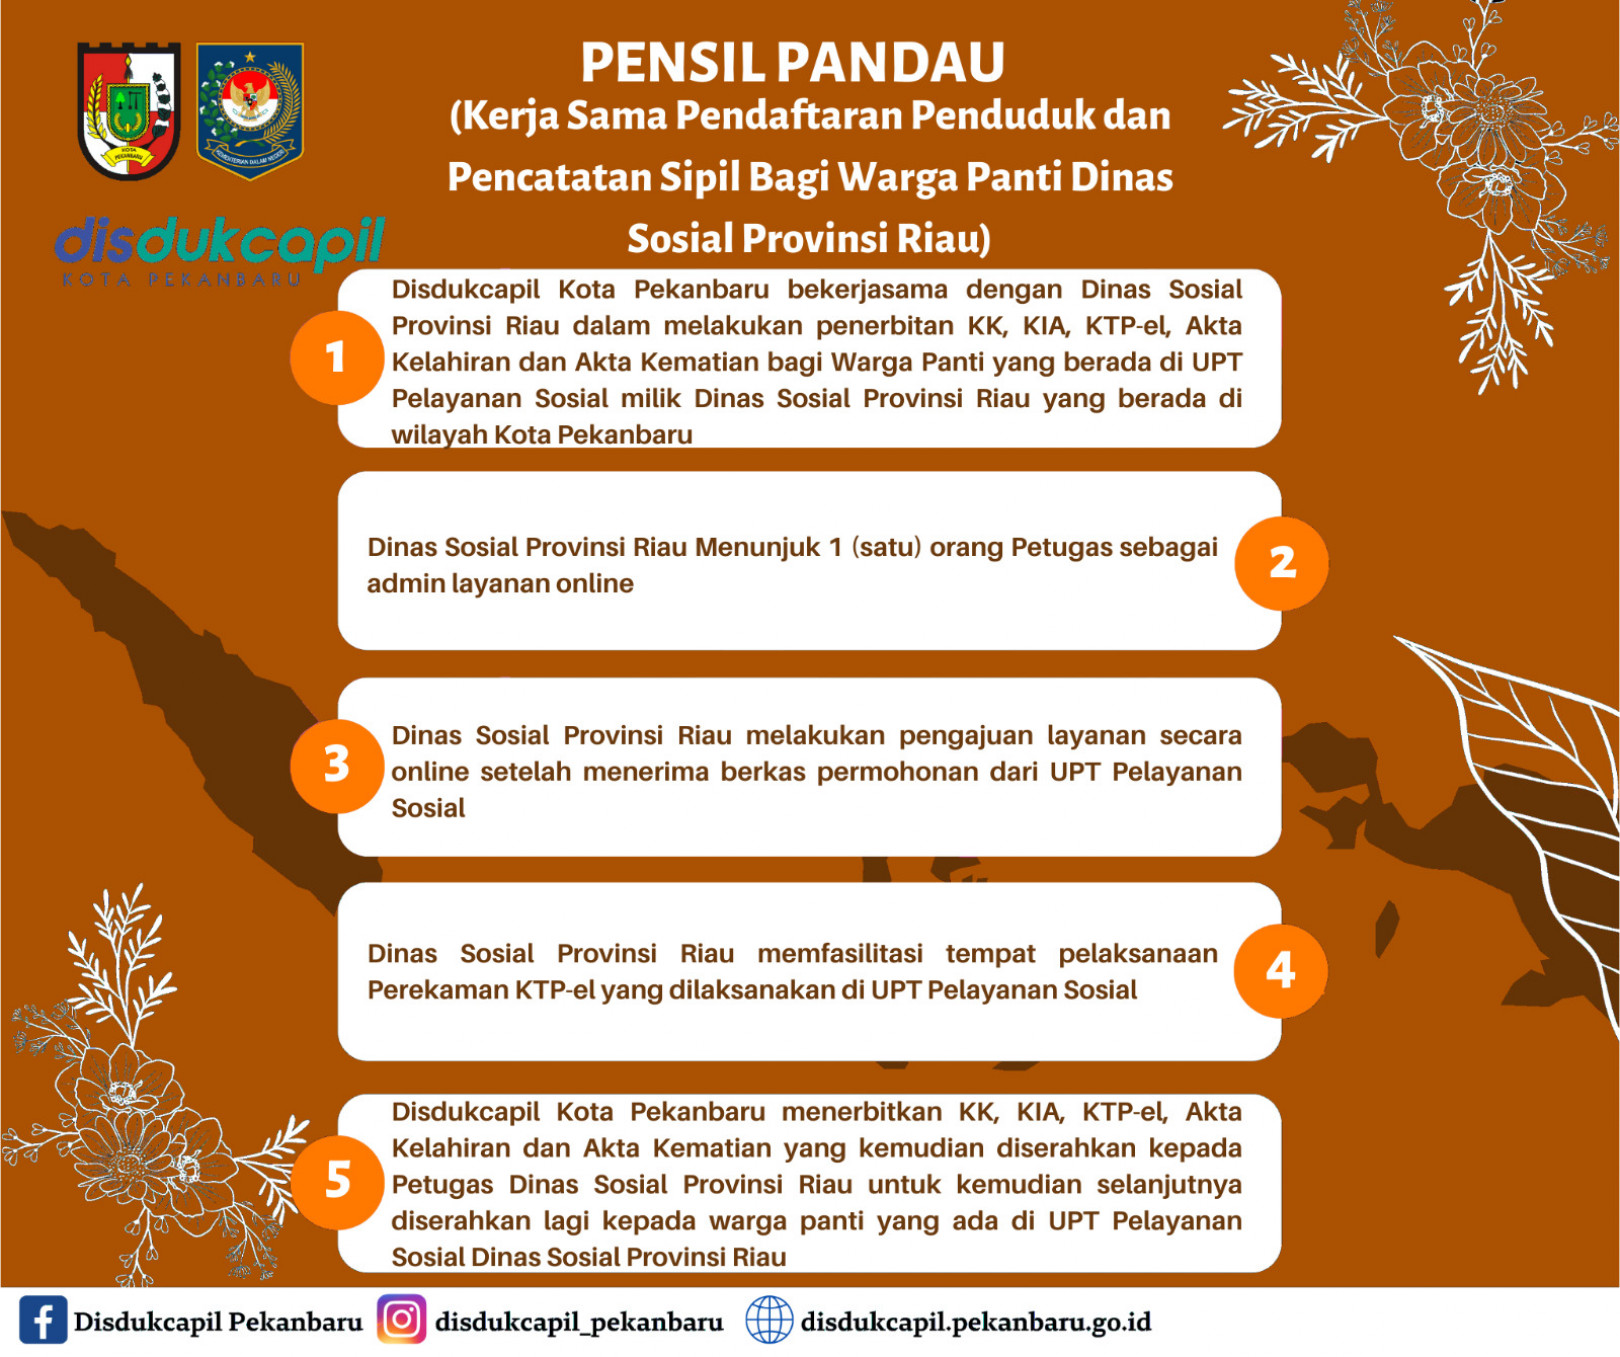 PENSIL PANDAU (Kerja Sama Pendaftaran Penduduk dan Pencatatan Sipil Bagi Warga Panti Dinas Sosial Provinsi Riau)